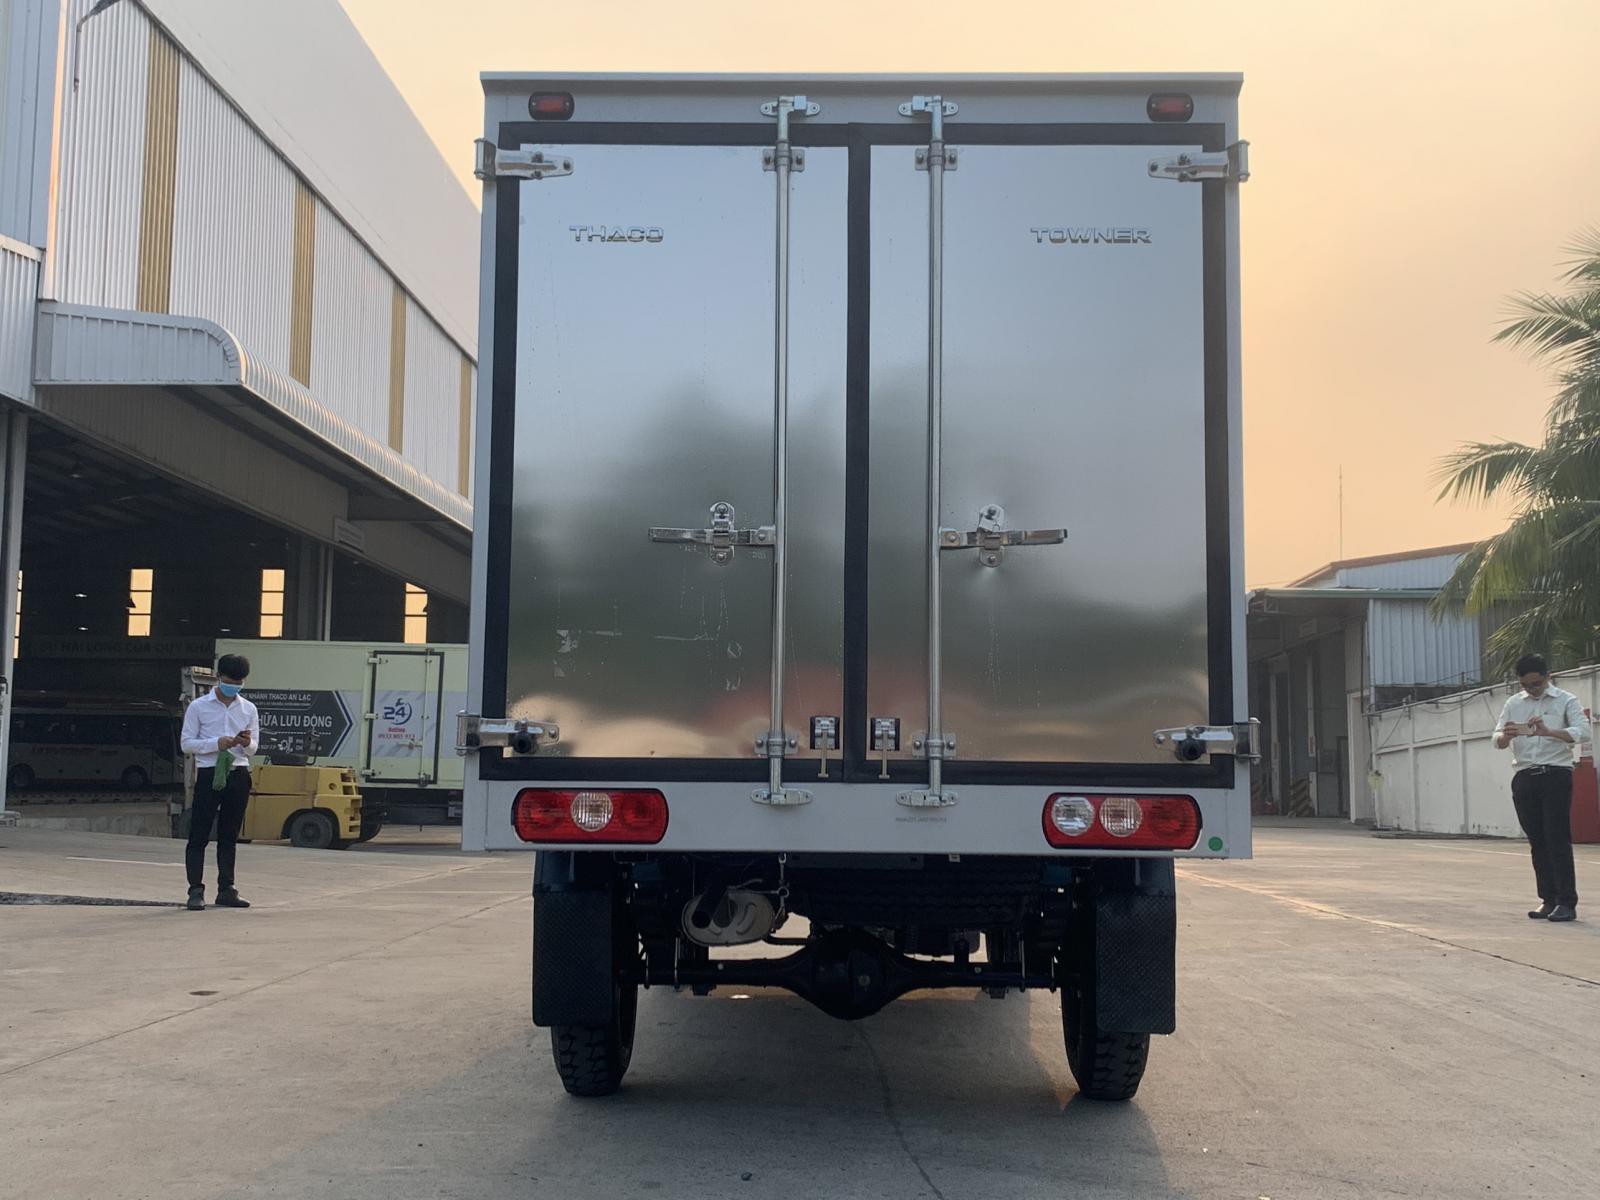  Xe tải 990 kg, thùng kín, đời 2022 , Thaco Towner 990-NC 